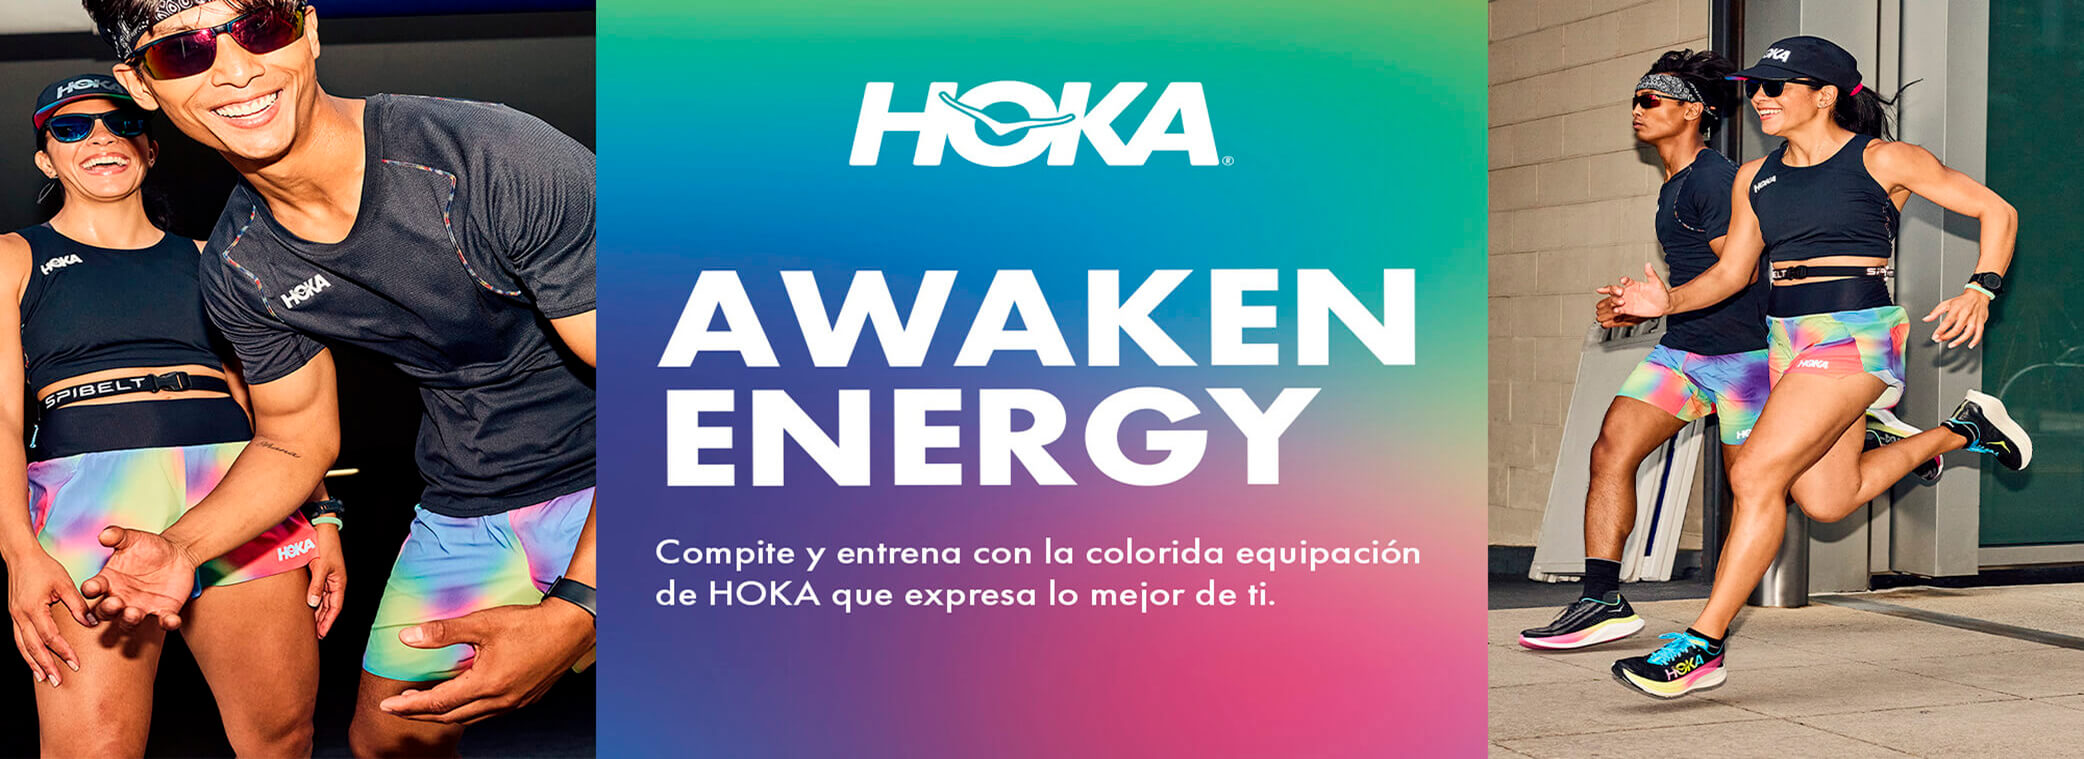 Hoka Awaken Energy